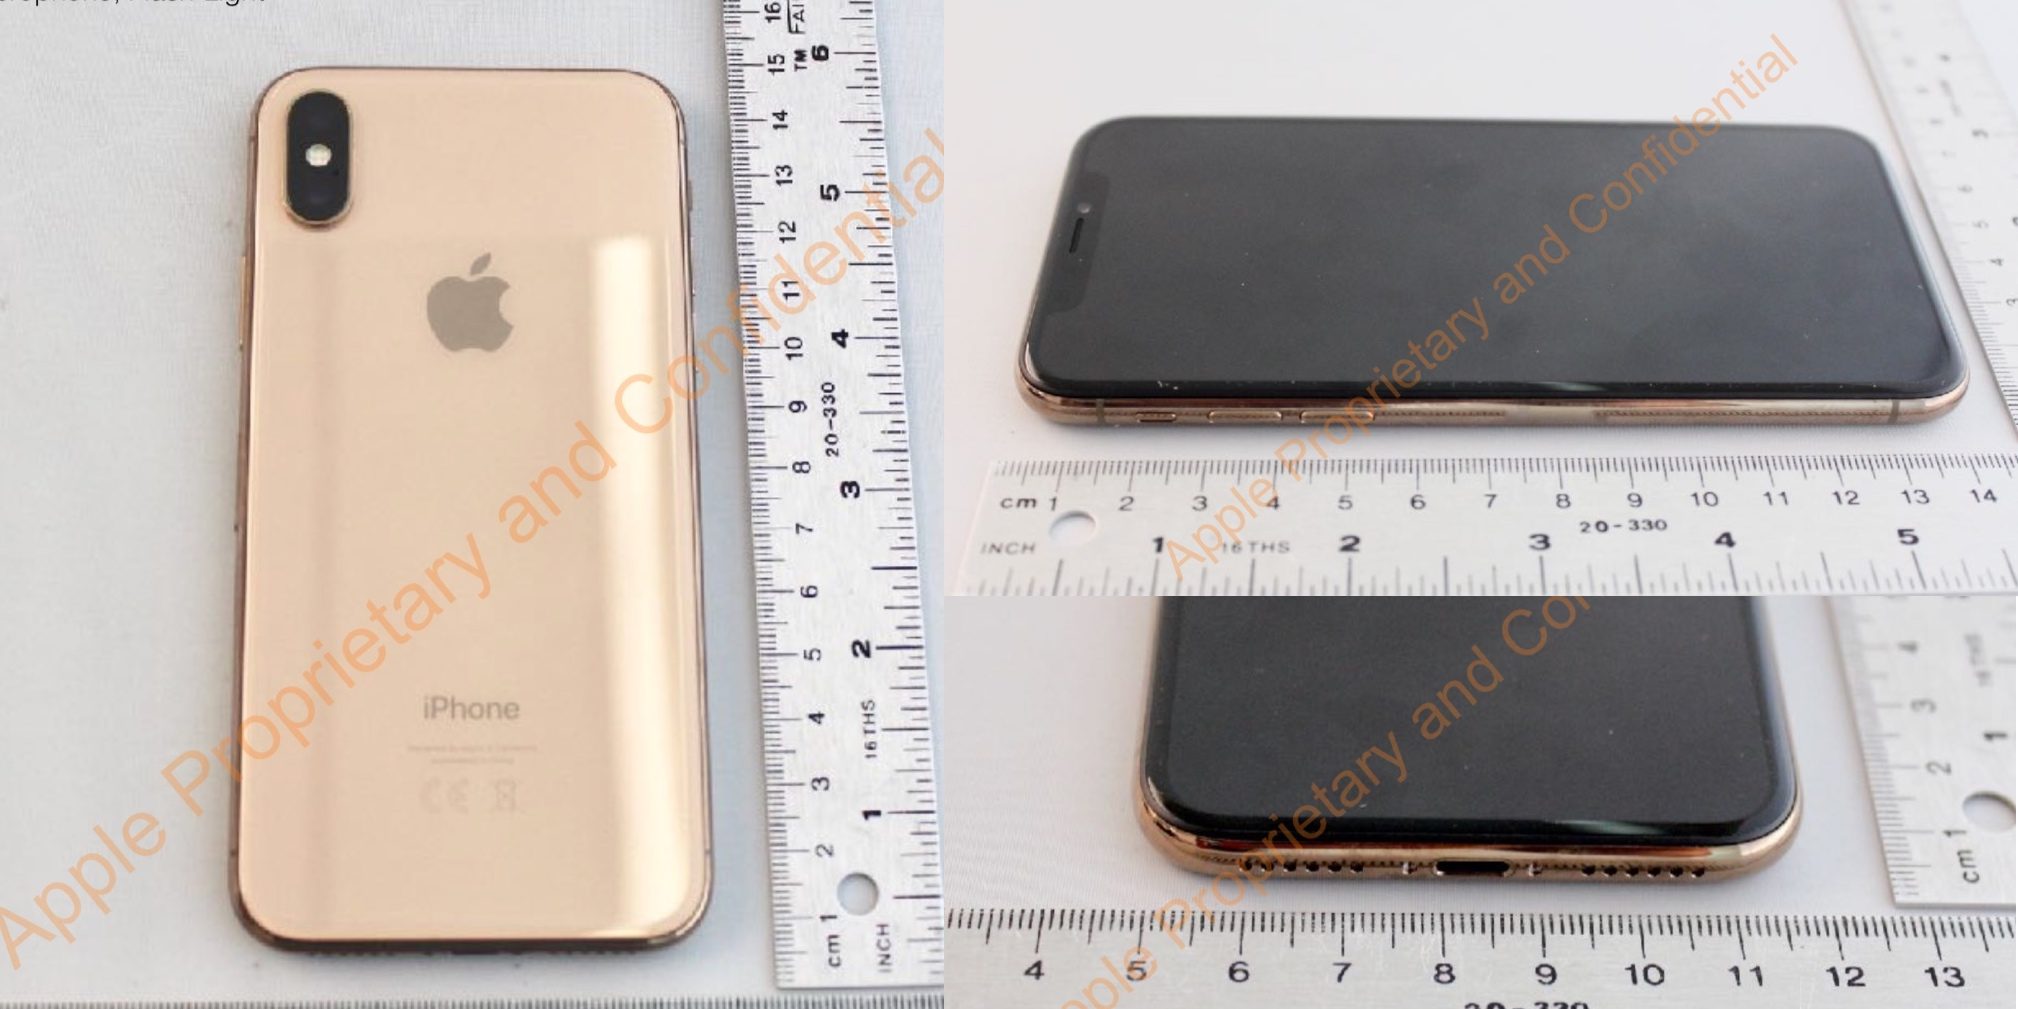 ｢iPhone X｣のゴールドモデルは実在した模様 ｰ FCCが公開した資料から明らかに